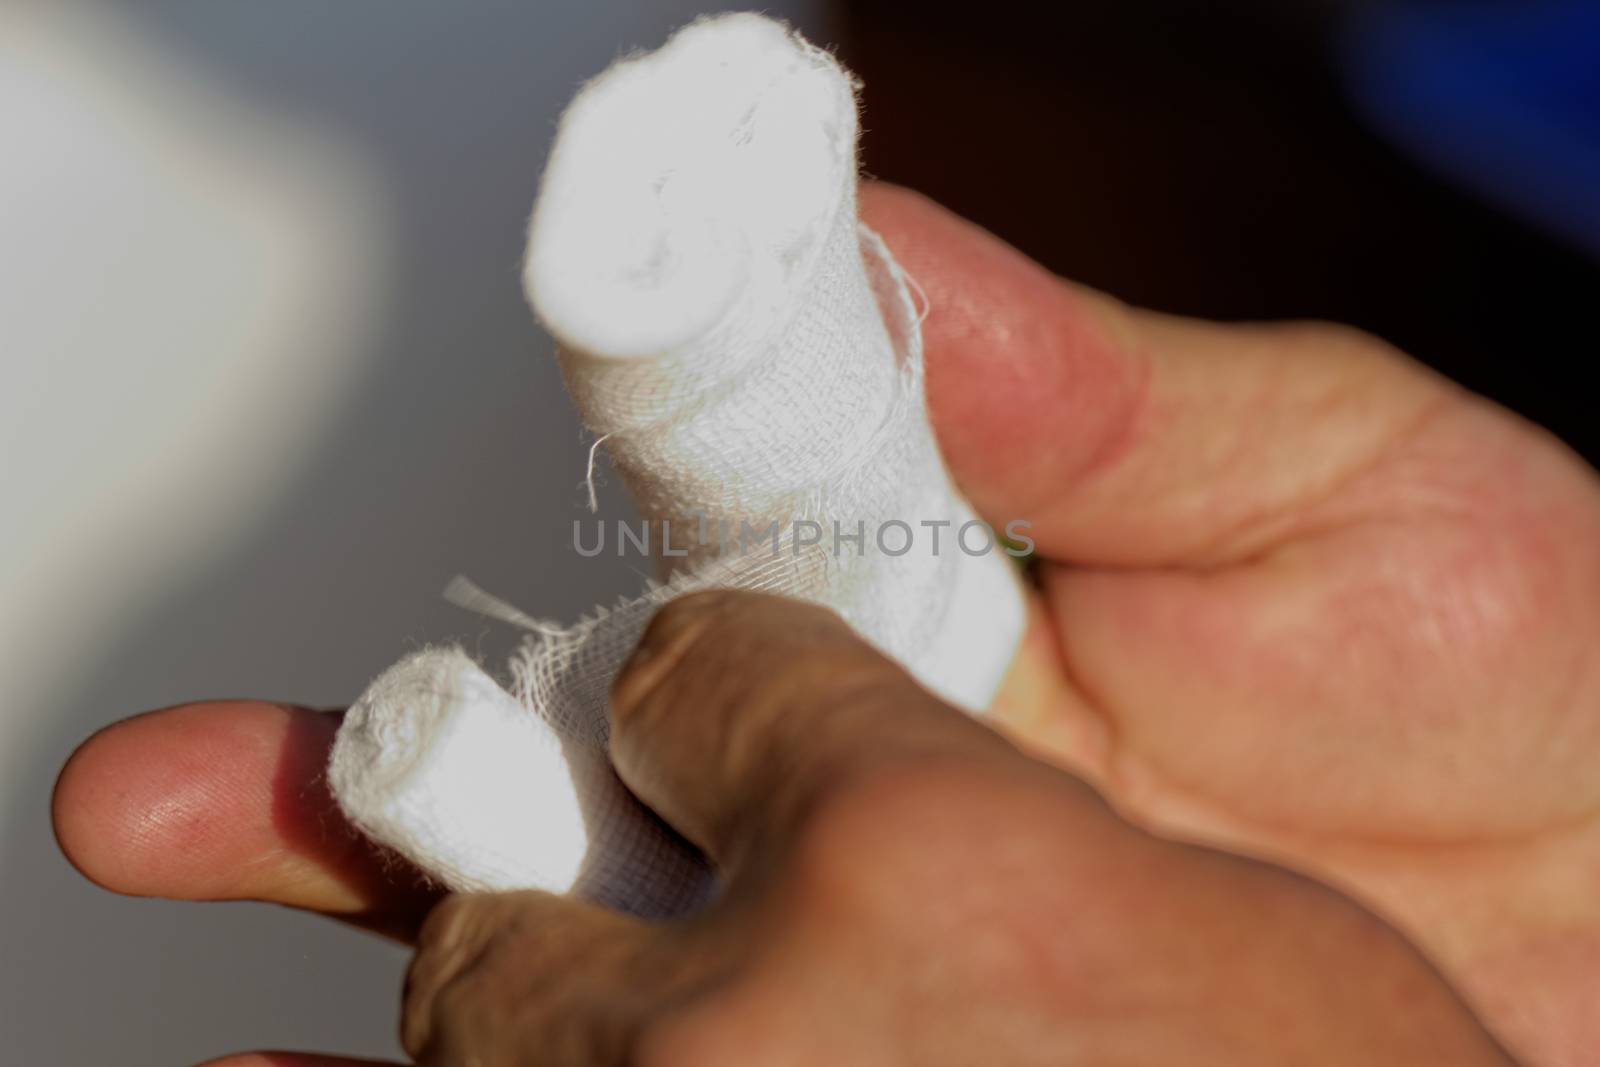 White medicine bandage on human injury hand finger by NagyDodo